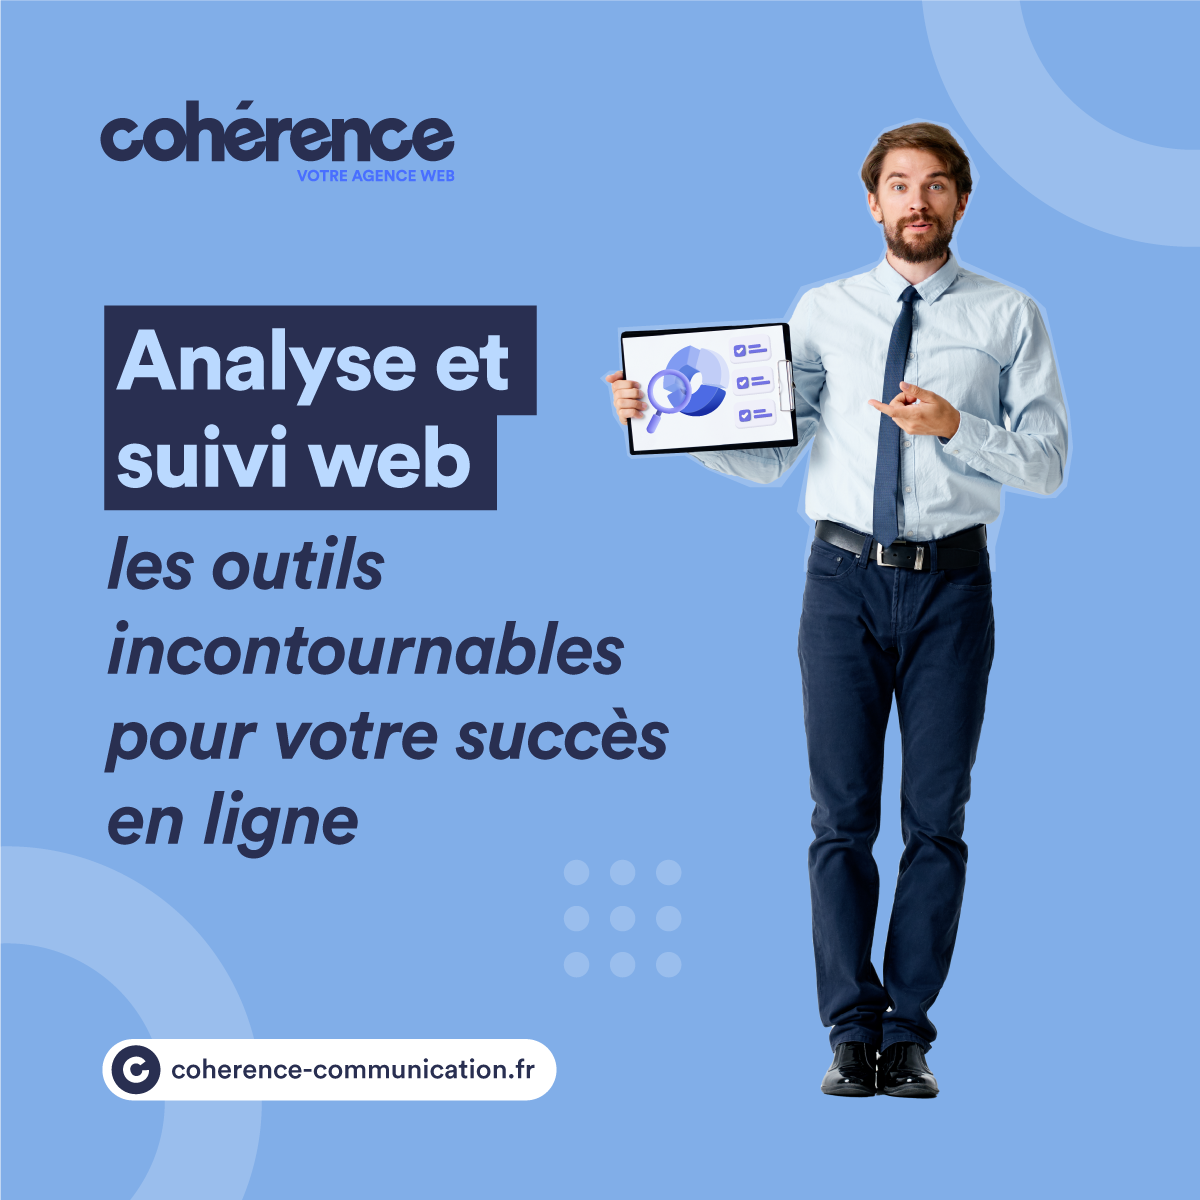 Coherence Agence Web Analyse Et Suivi Web Les Outils Incontournables Pour Votre Succes En Ligne